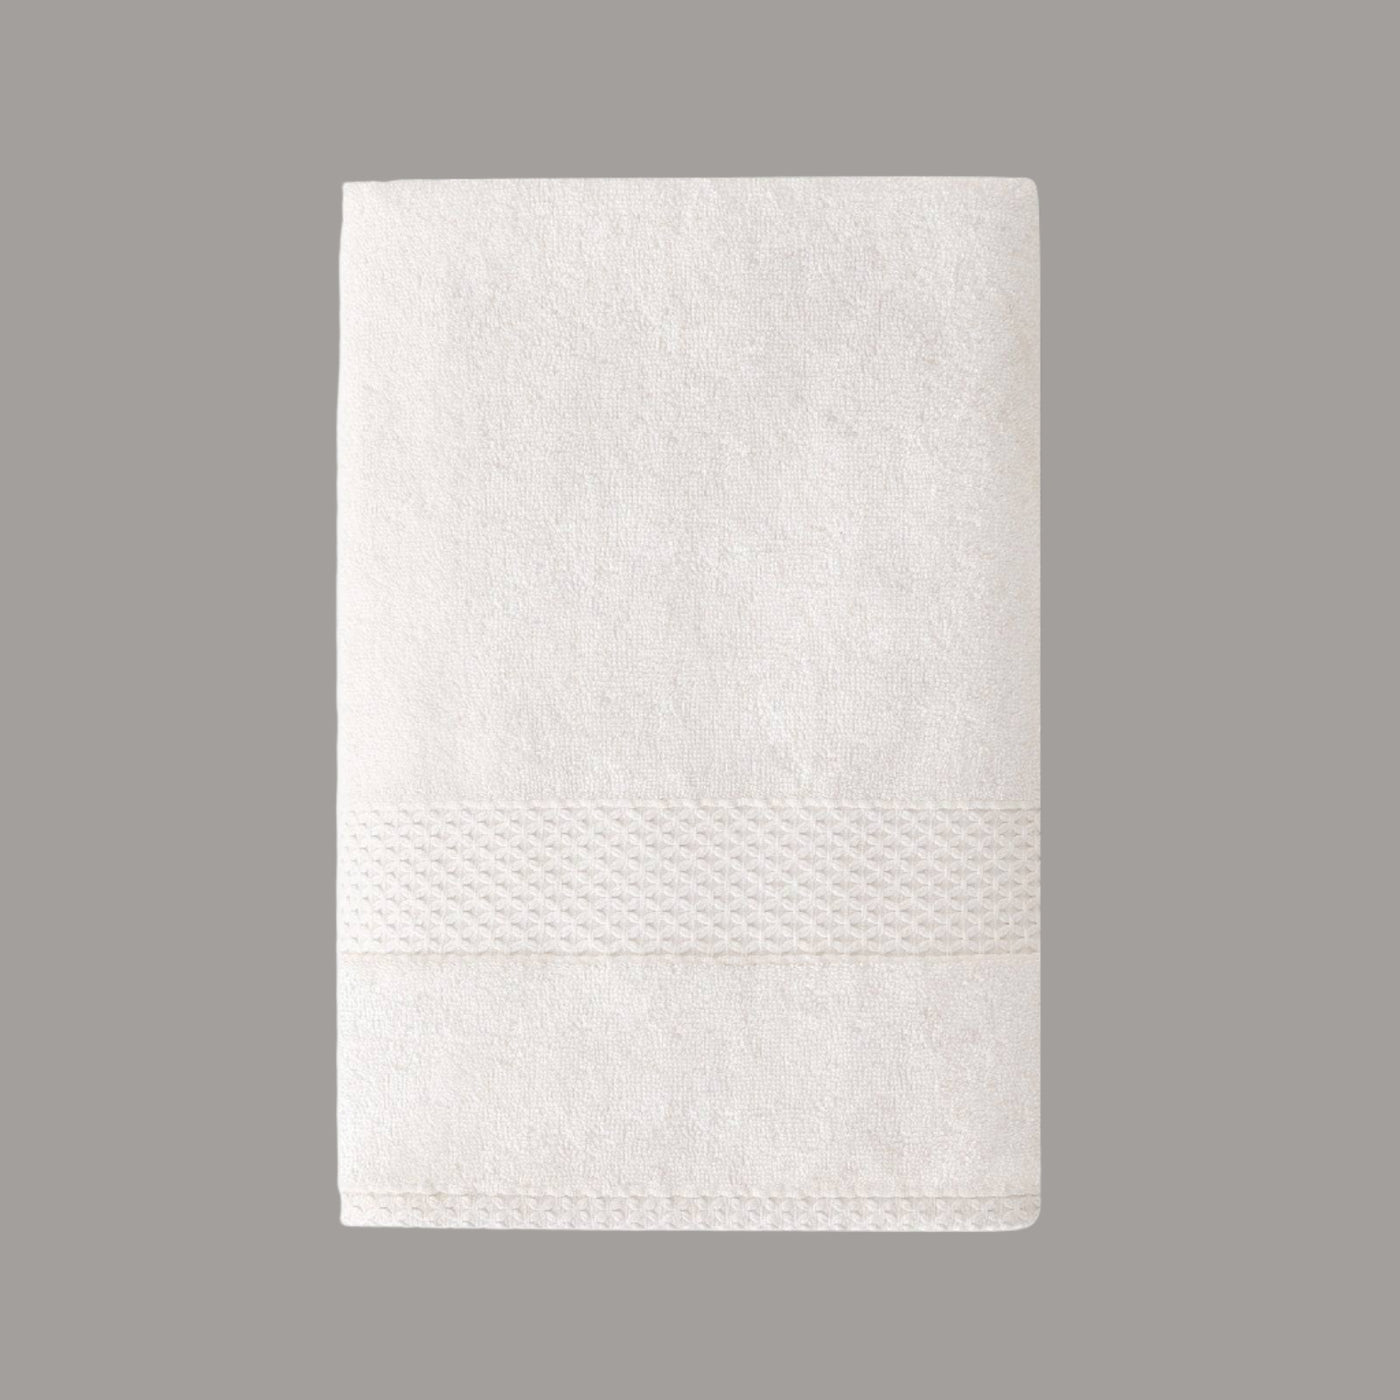 Aqua Fibro Extra Soft 100% Turkish Cotton Bath Towel, Off-White Bath Towels sazy.com